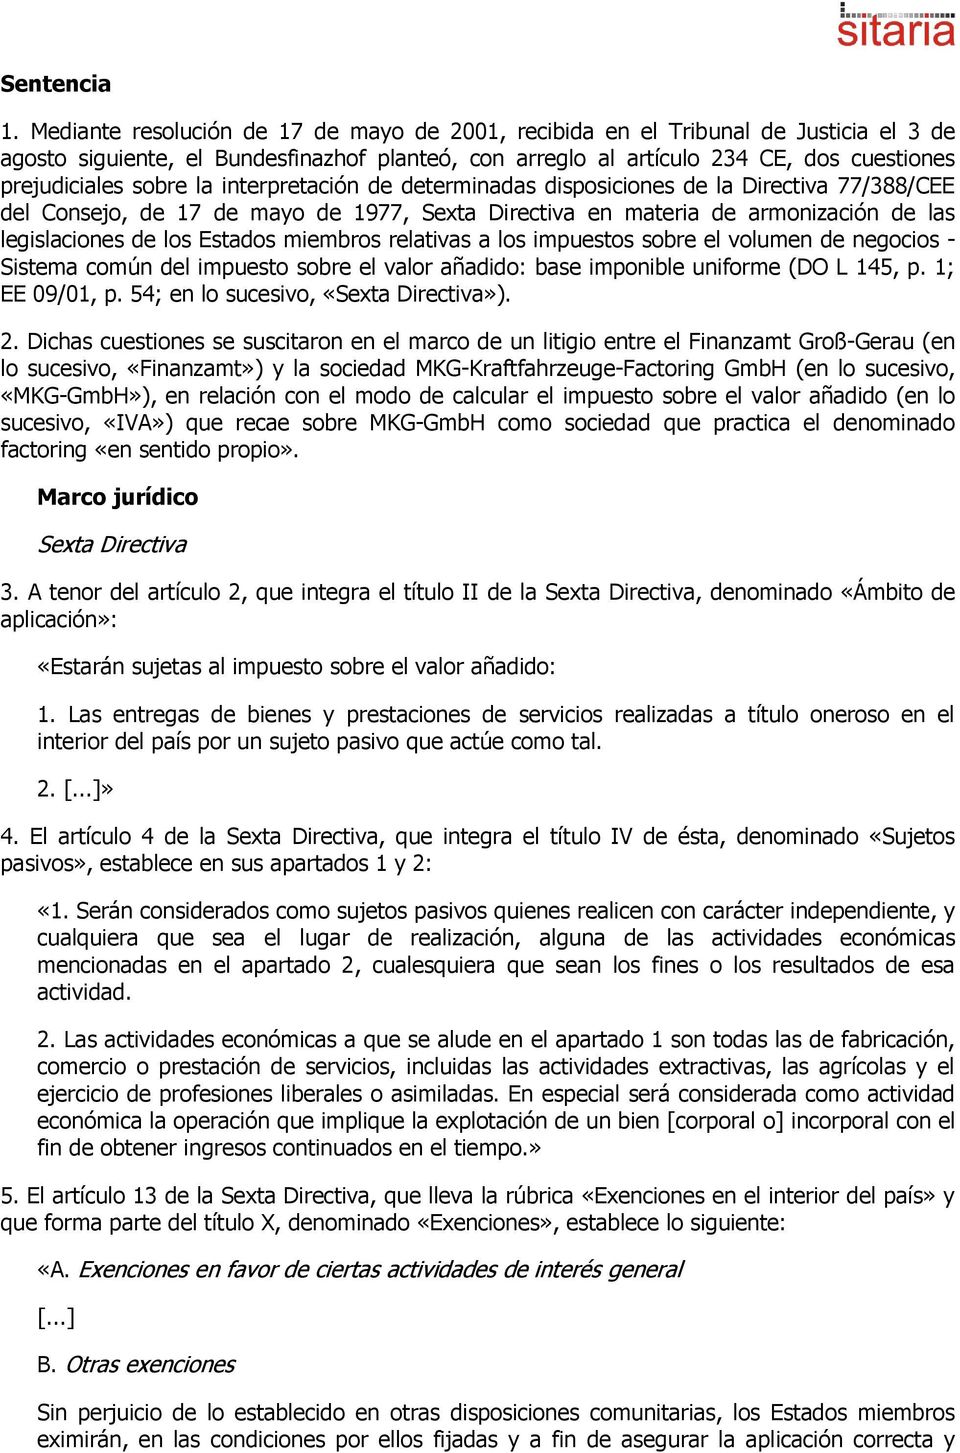 la interpretación de determinadas disposiciones de la Directiva 77/388/CEE del Consejo, de 17 de mayo de 1977, Sexta Directiva en materia de armonización de las legislaciones de los Estados miembros